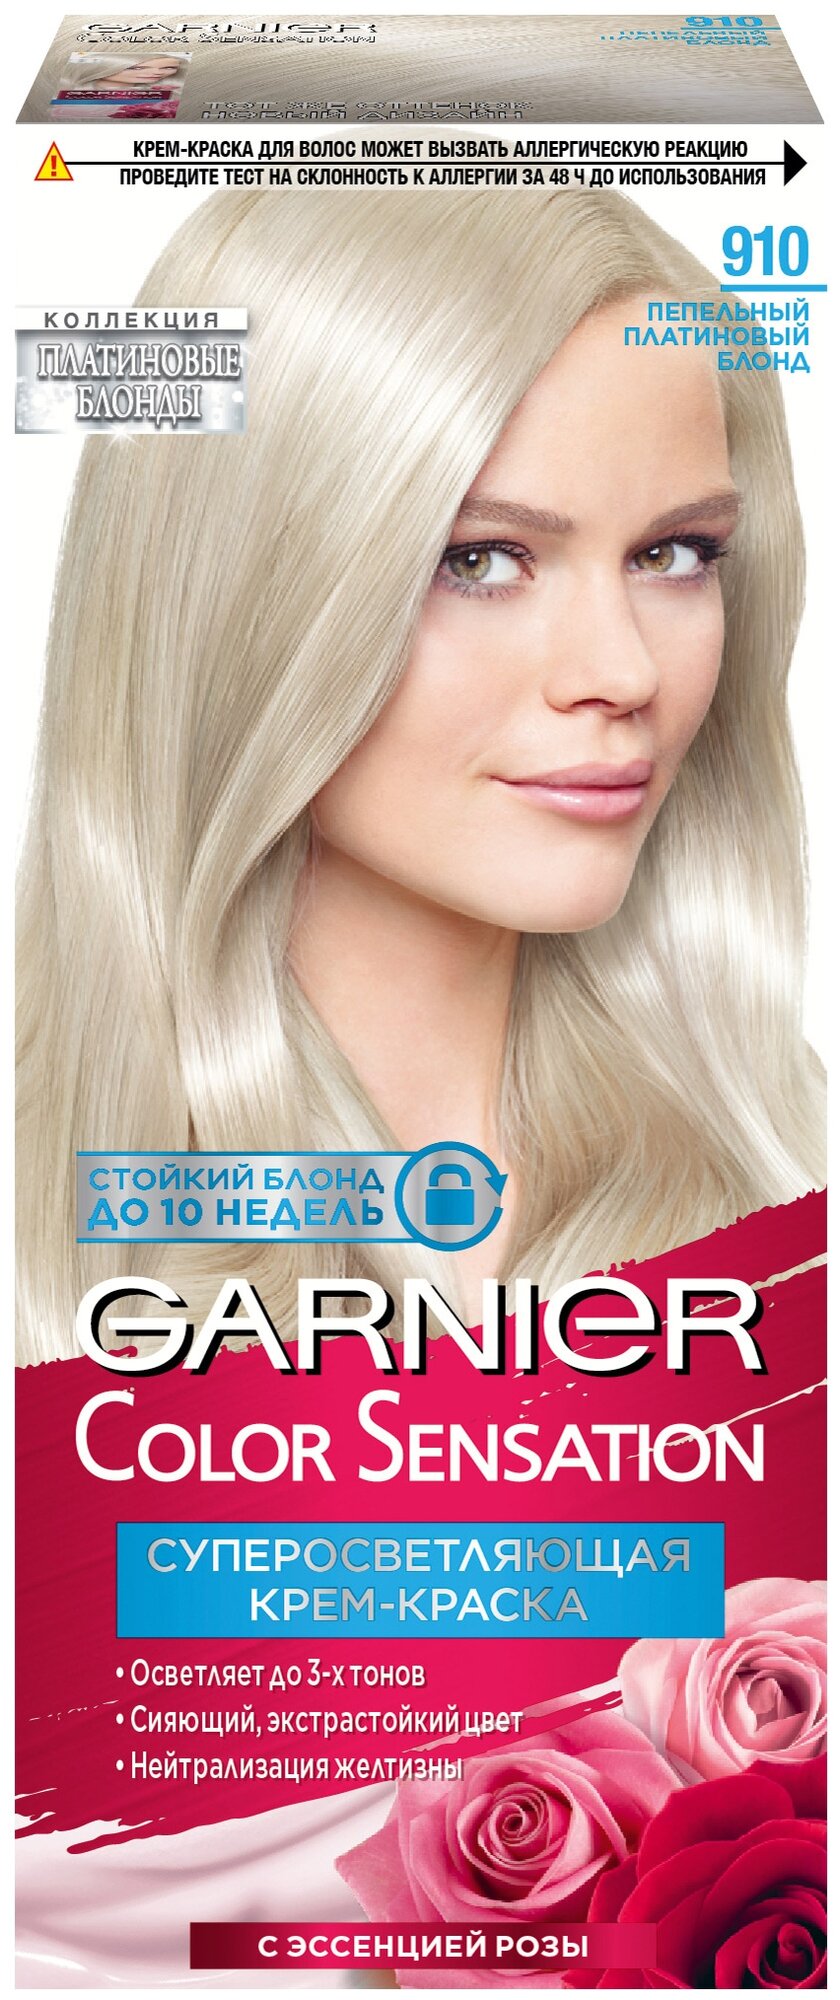 Крем-краска для волос Garnier Color Sensation Дымчатый Ультраблонд 911 - фото №1